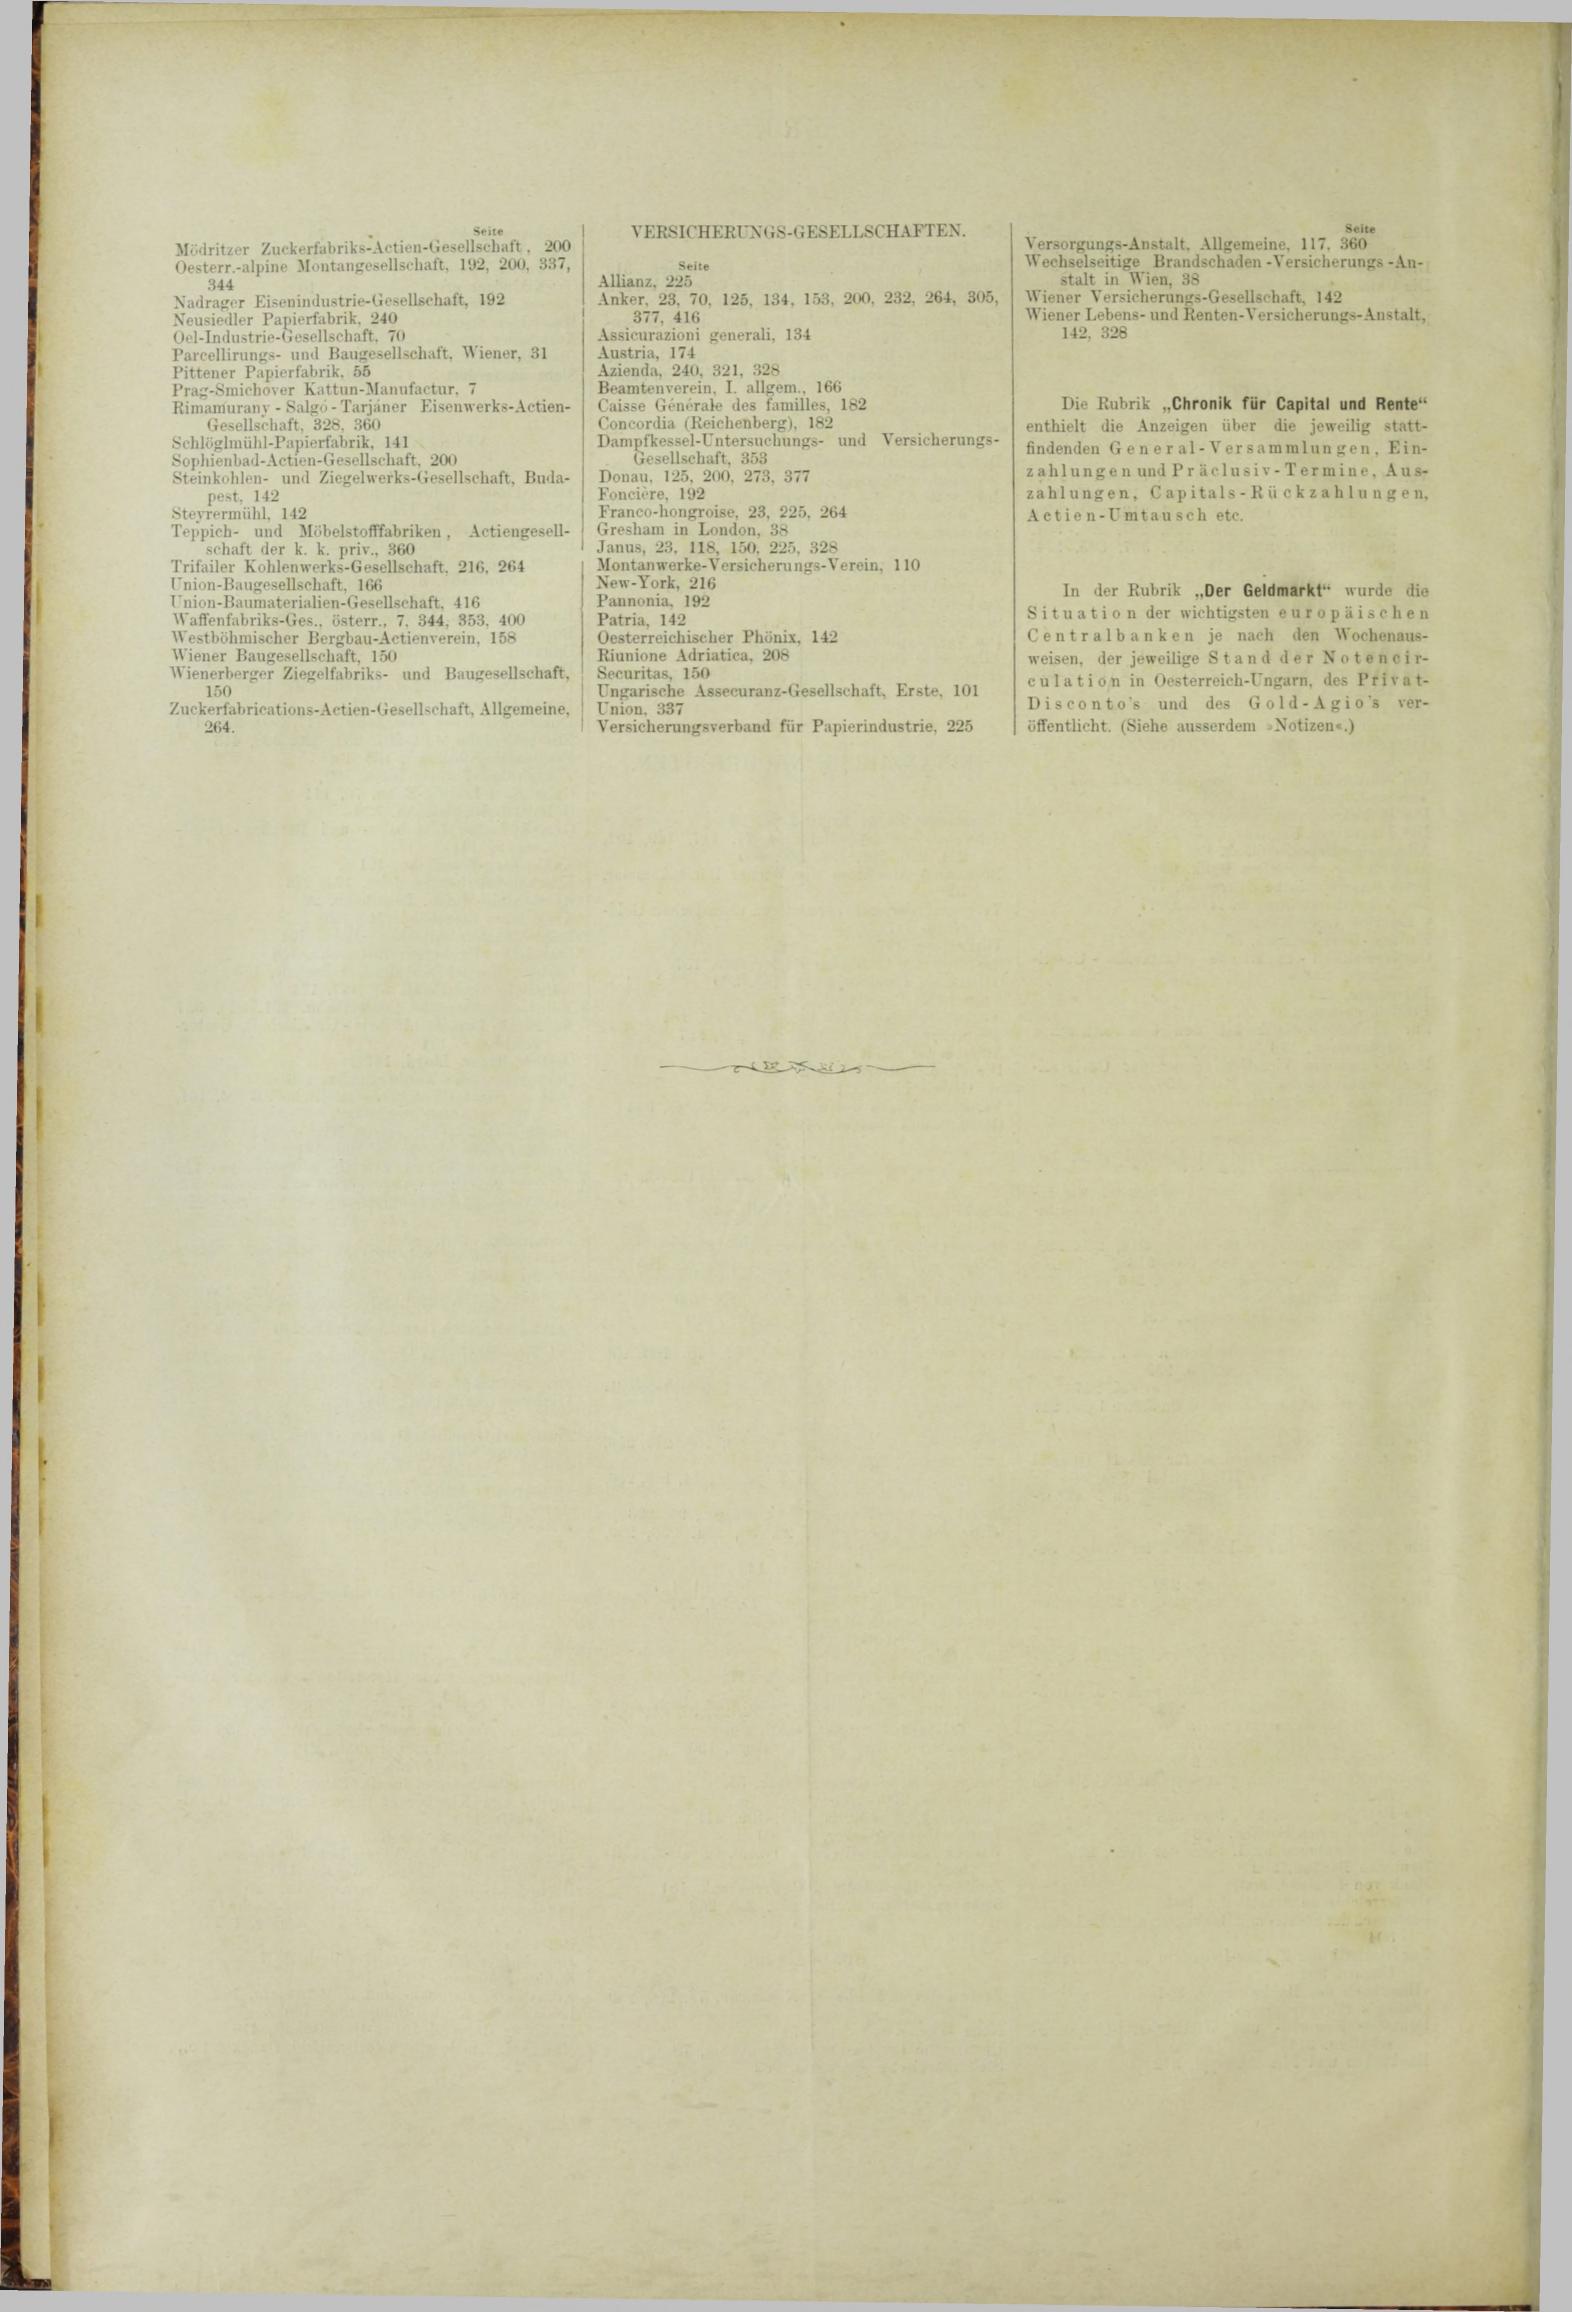 Der Tresor 01.03.1883 - Seite 12